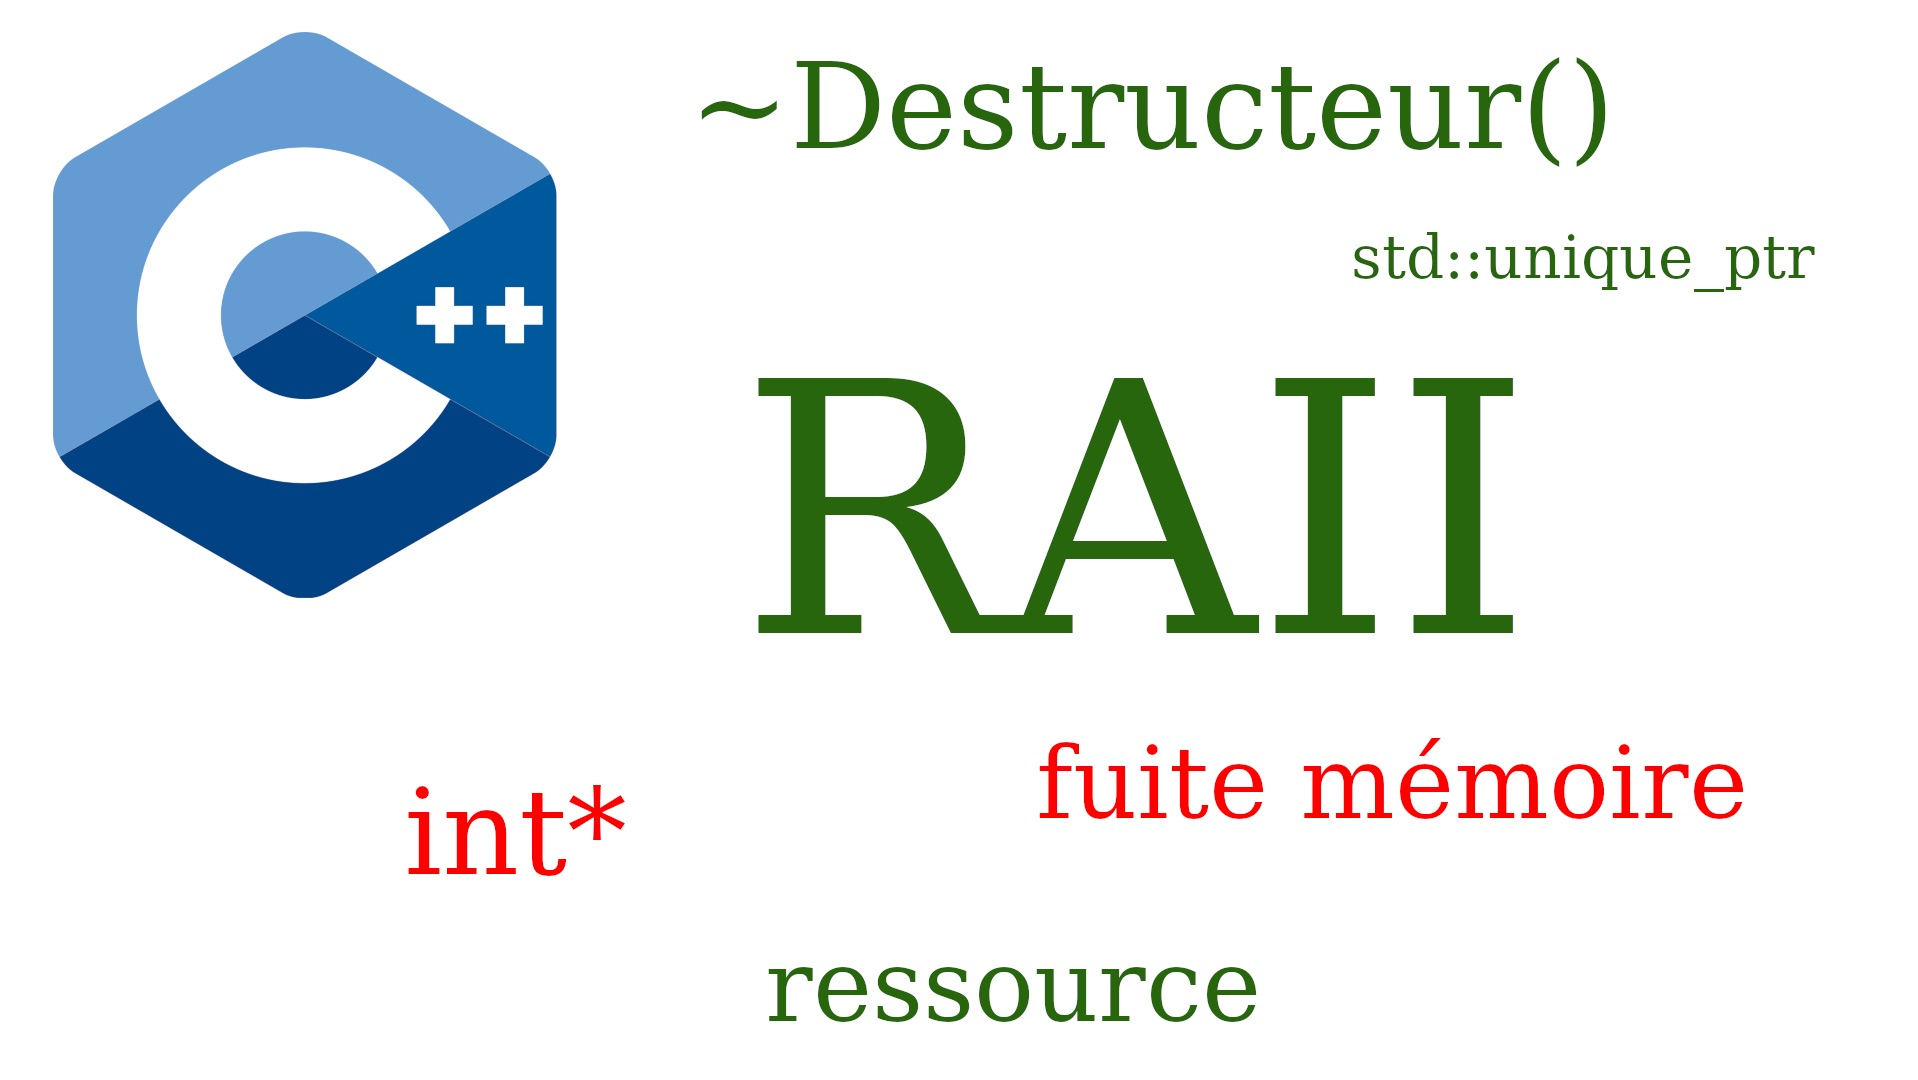 都说 C++ 没有 GC，RAII: 那么我算个啥？